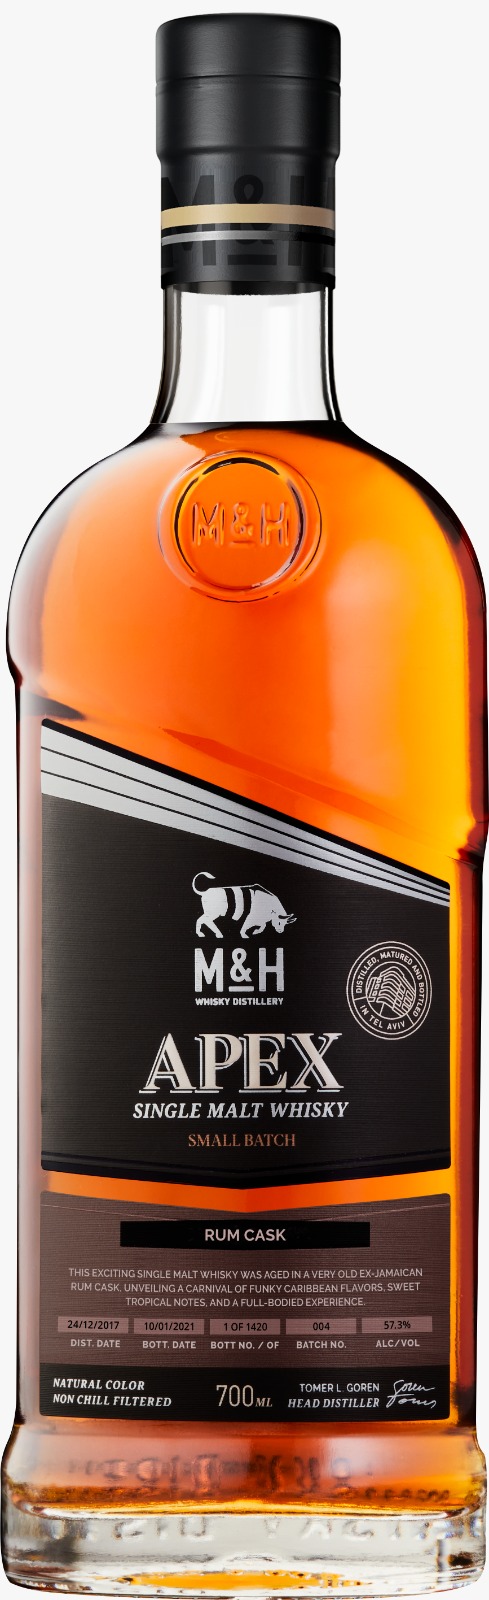 M&H APEX - Rum Cask